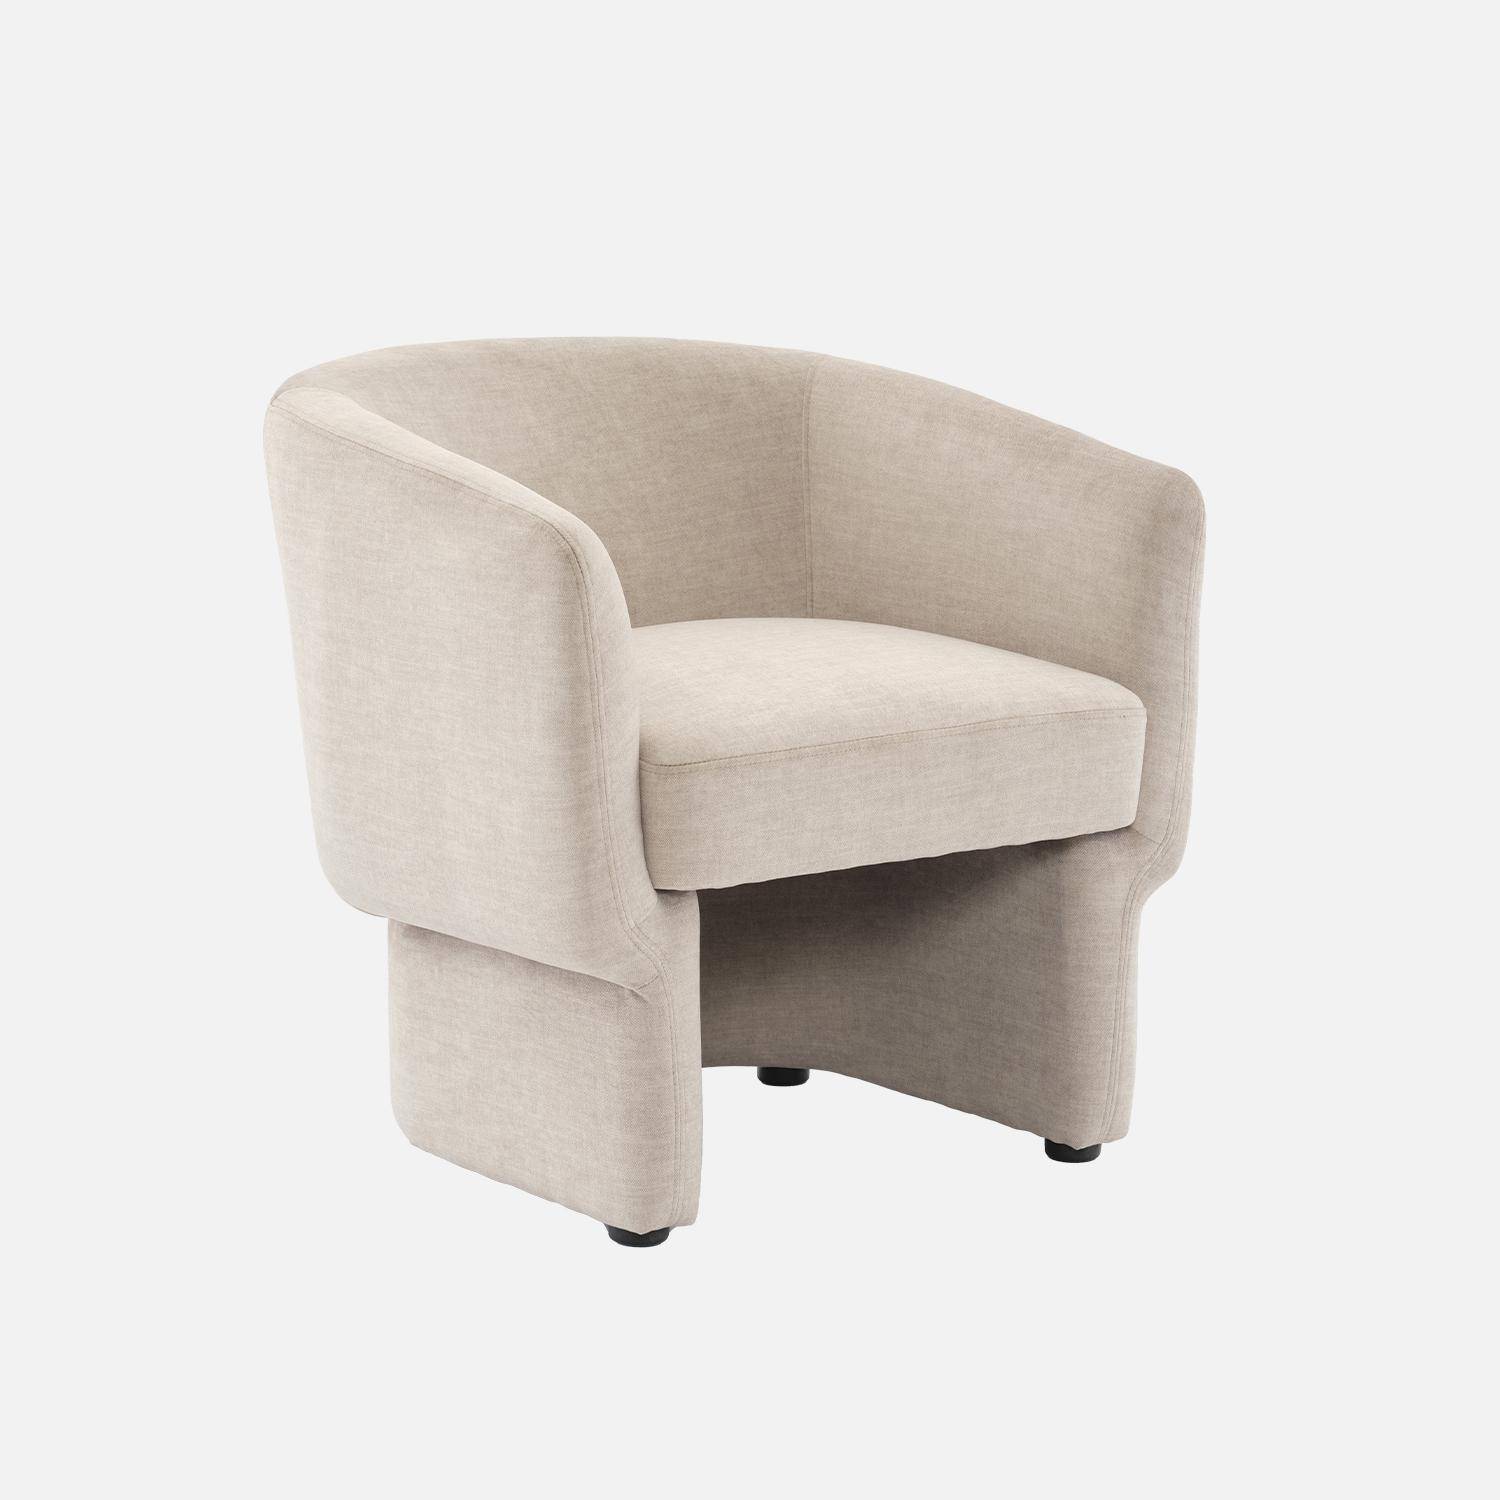 Beige stoffen fauteuil, Dolce, L 70 x P 70 x H 72cm, eucalyptushouten structuur,sweeek,Photo3